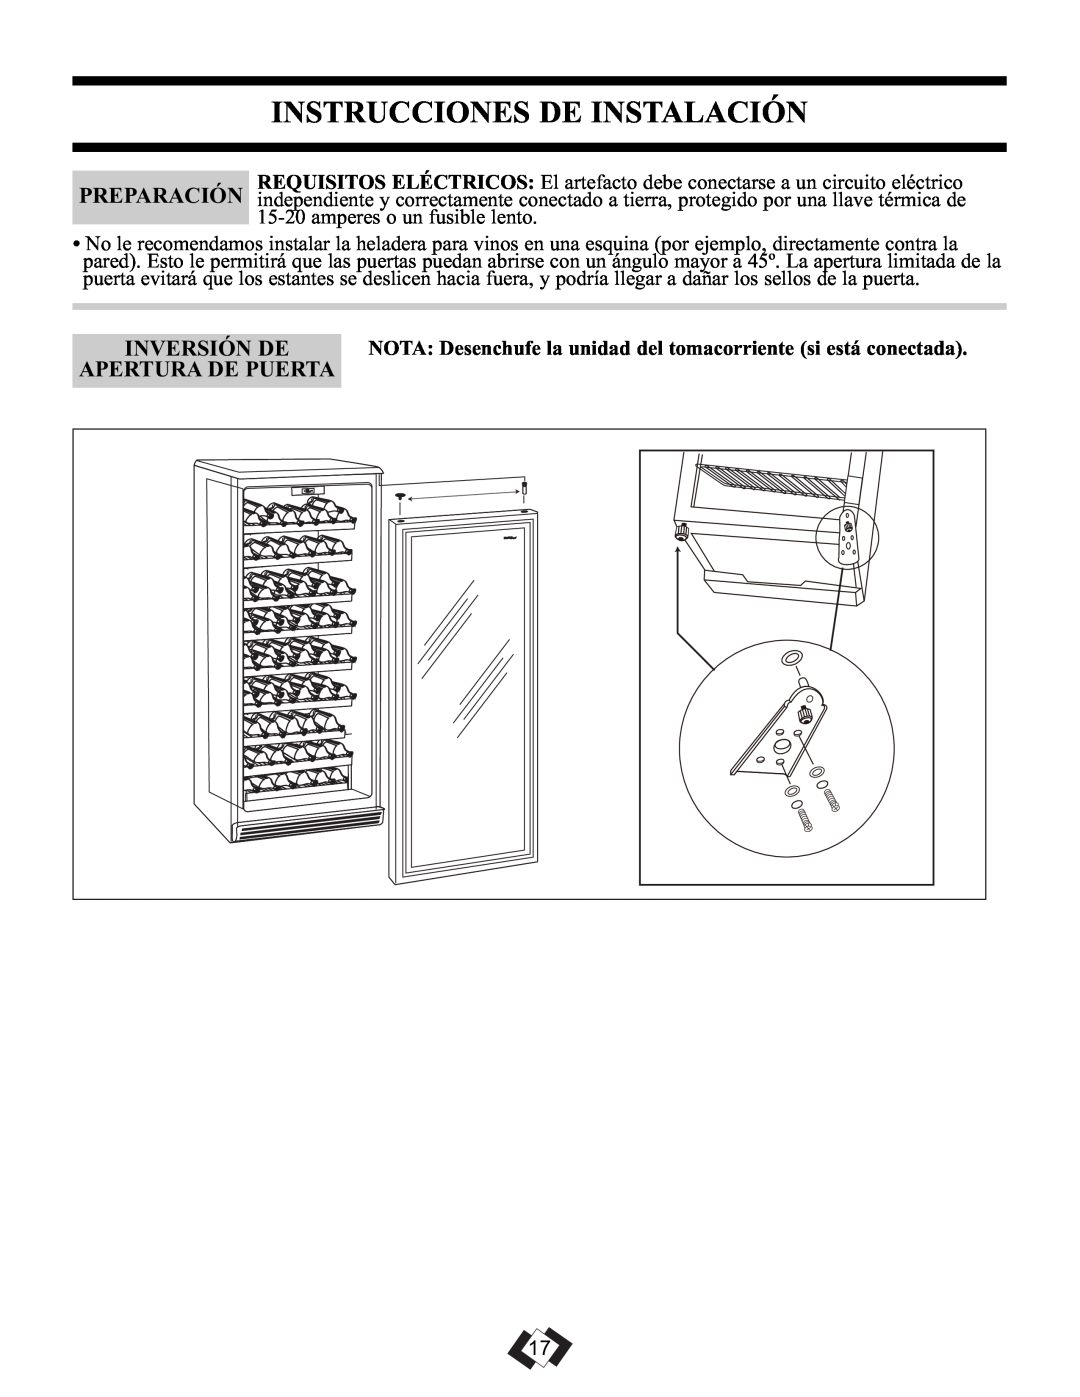 Danby DWC106A1BPDD manual Instrucciones De Instalación, Inversión De, Apertura De Puerta 